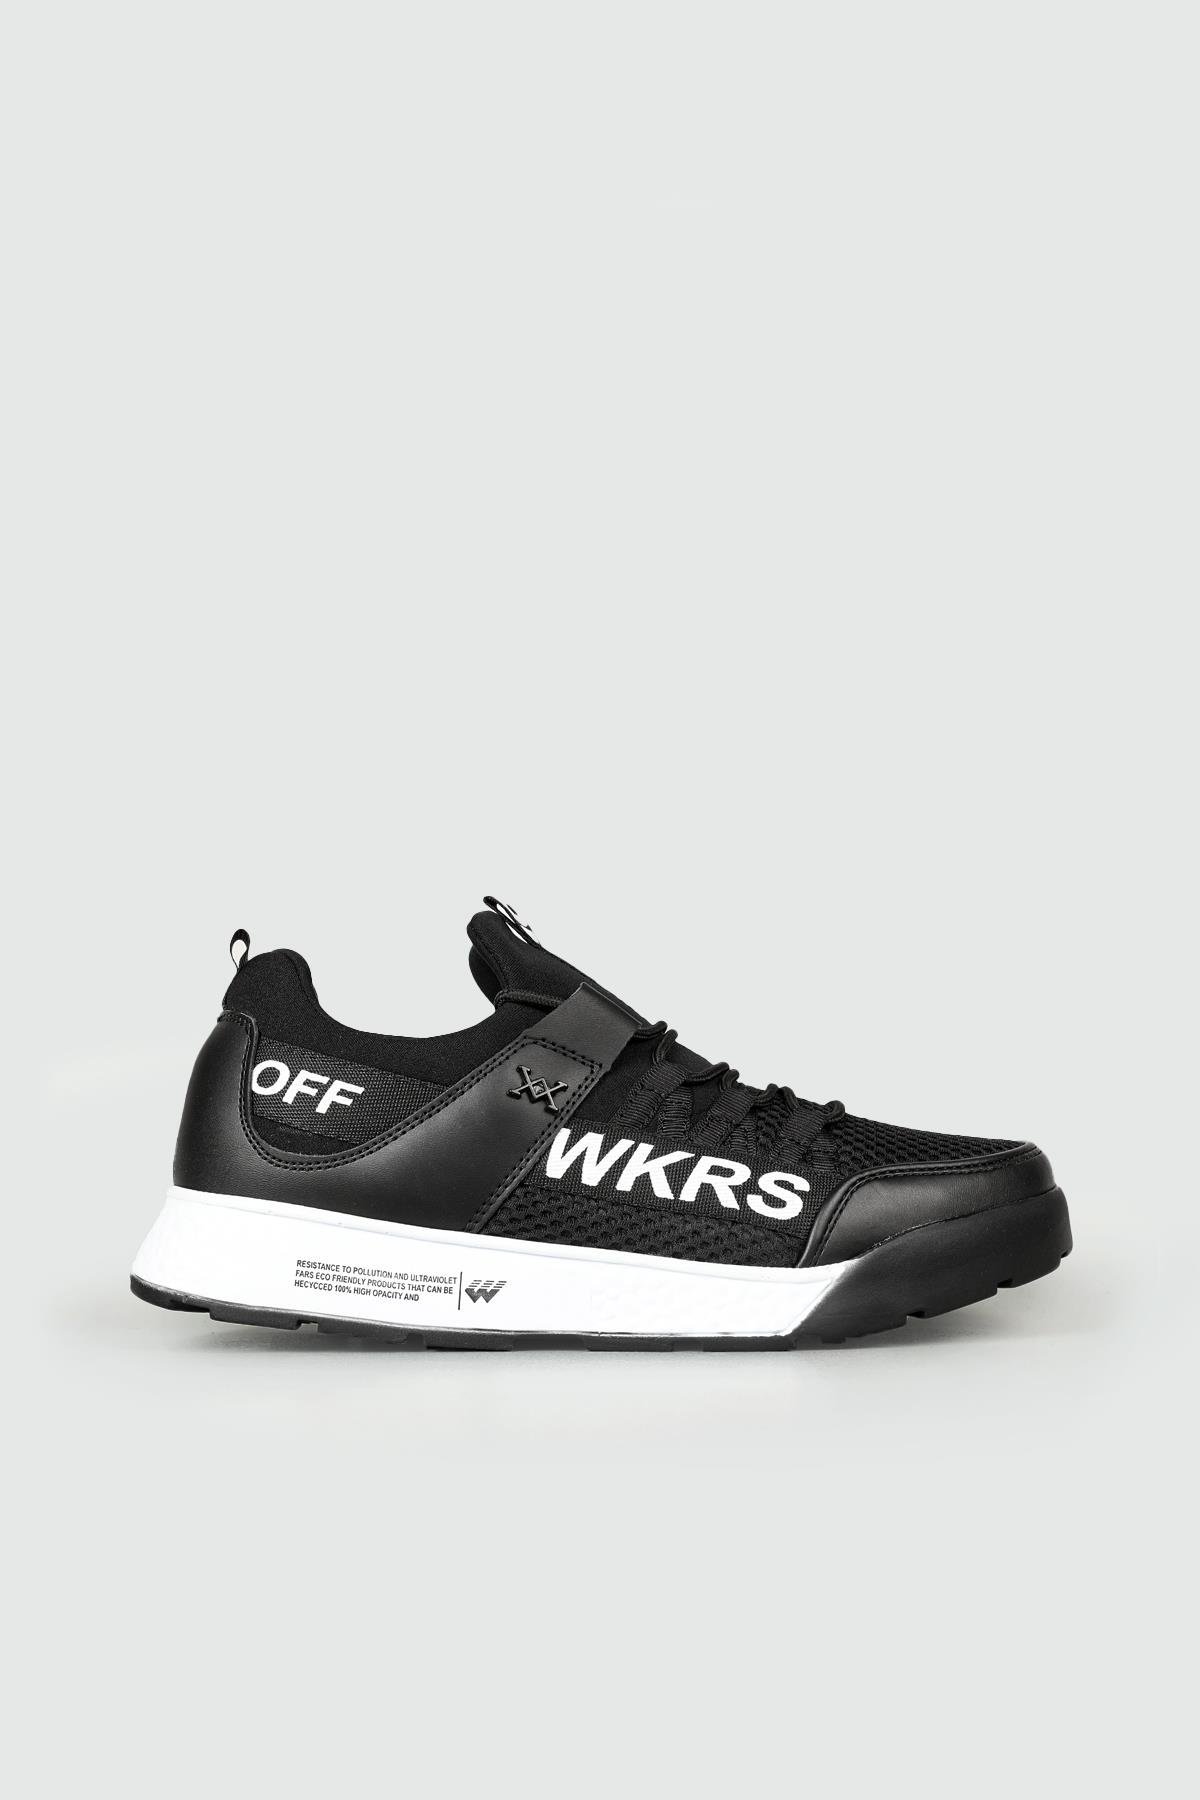 Wickers Günlük Koşu Yürüyüş Siyah Beyaz Erkek Spor Ayakkabı 2300 | Ayakkabı  City